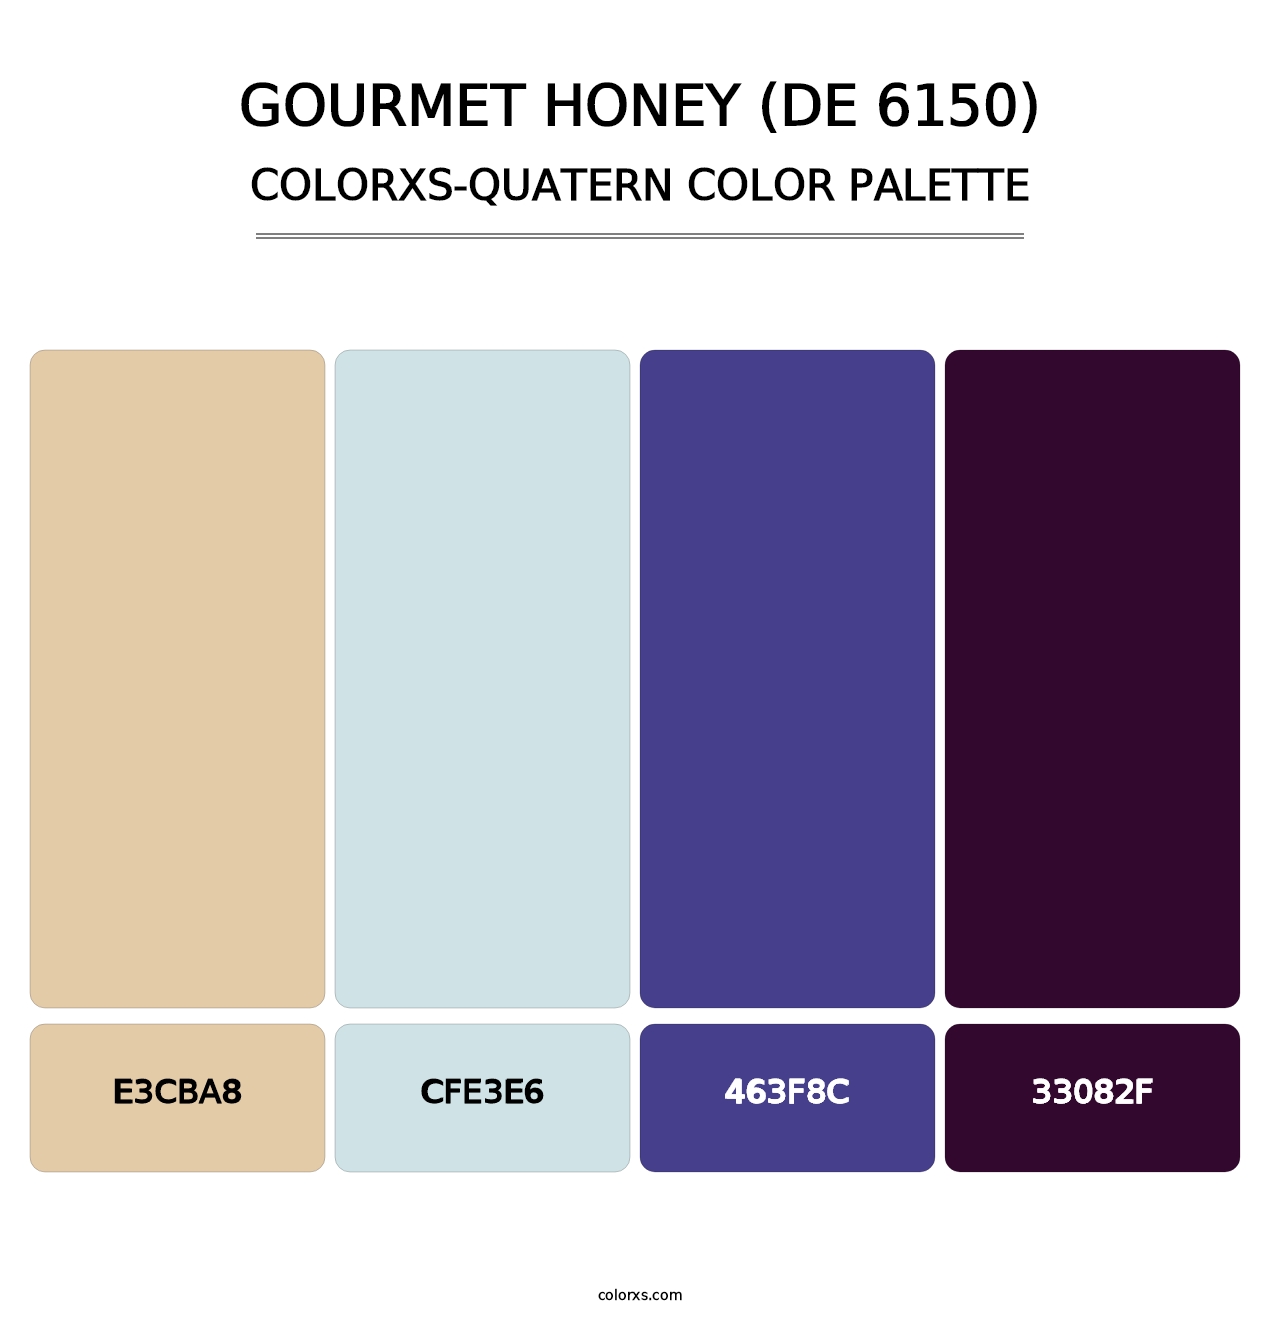 Gourmet Honey (DE 6150) - Colorxs Quatern Palette